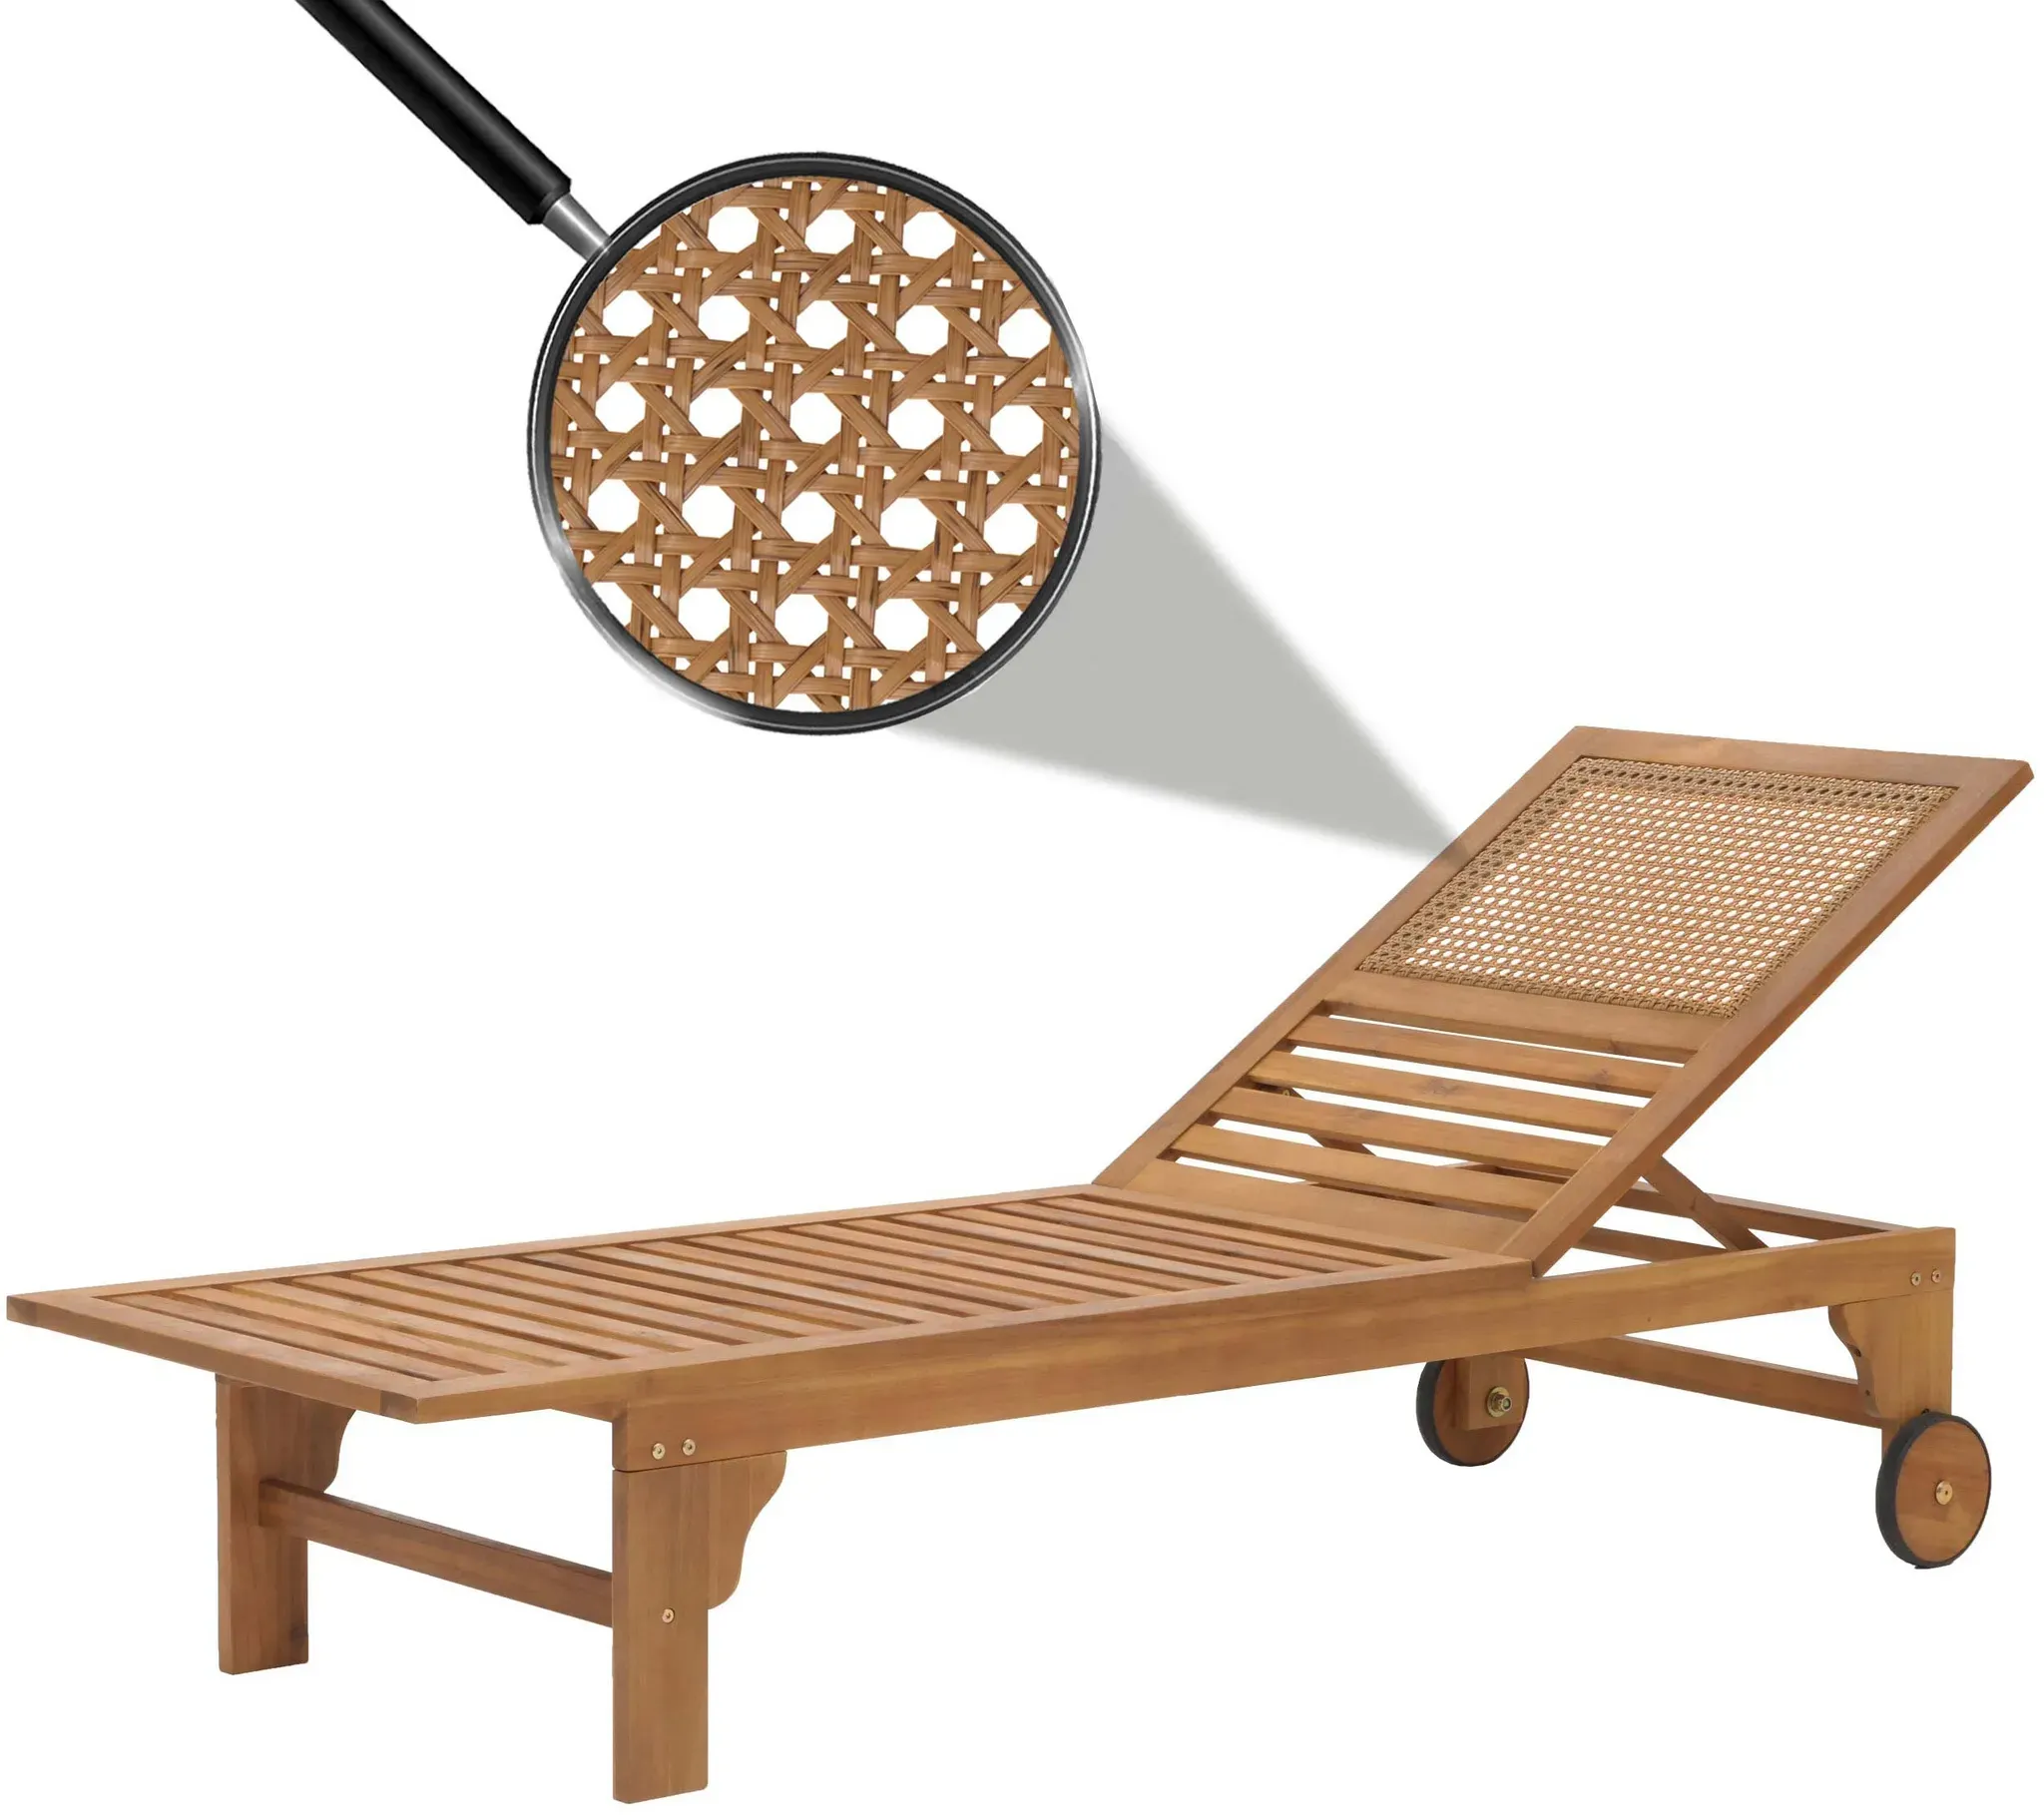 Sonnenliege HWC-N48, Relaxliege Gartenliege Liegestuhl, Massiv-Holz Akazie MVG-zertifiziert